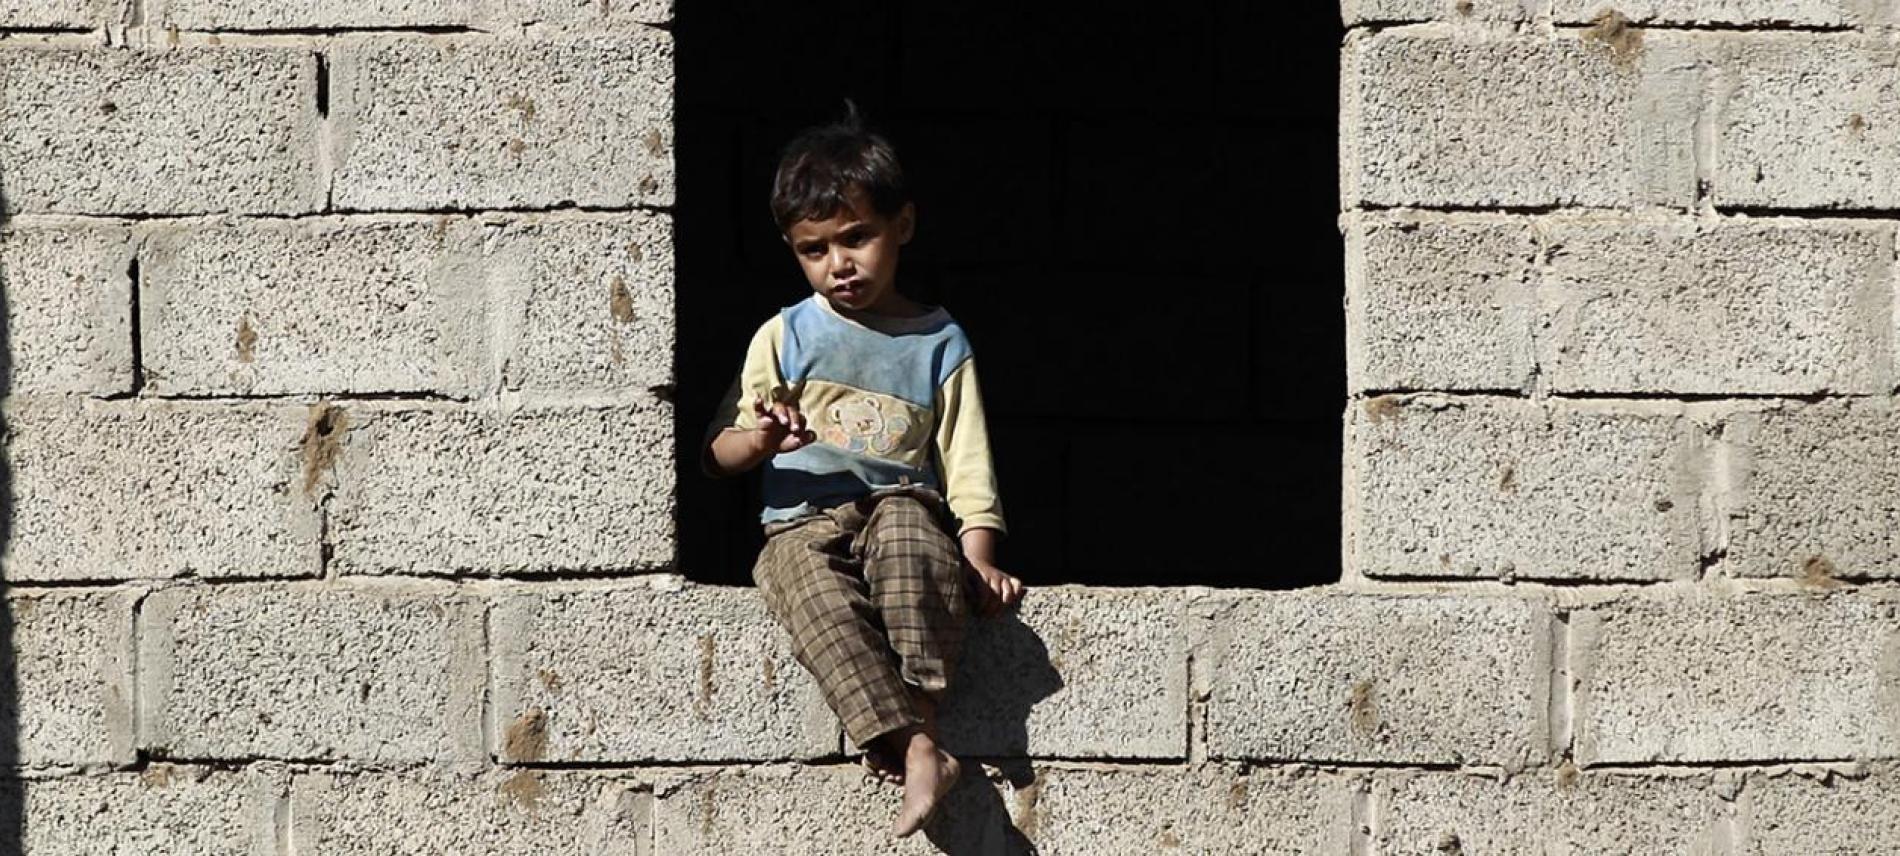 Kleiner Junge im Jemen 